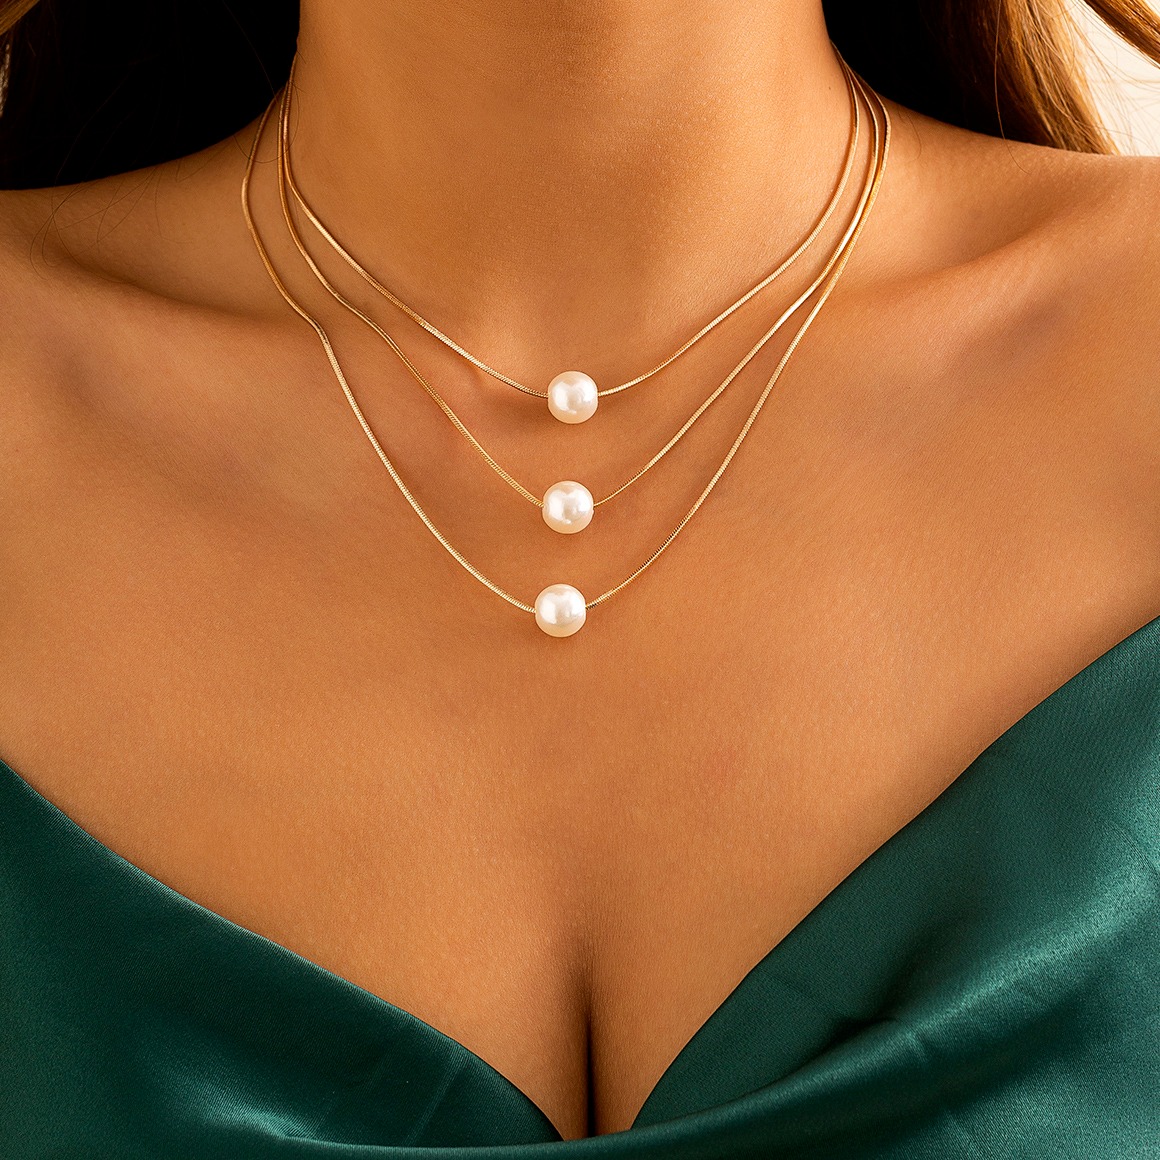 Collier ras de cou triple chaîne pendentifs perles porté autour du cou d'une femme.